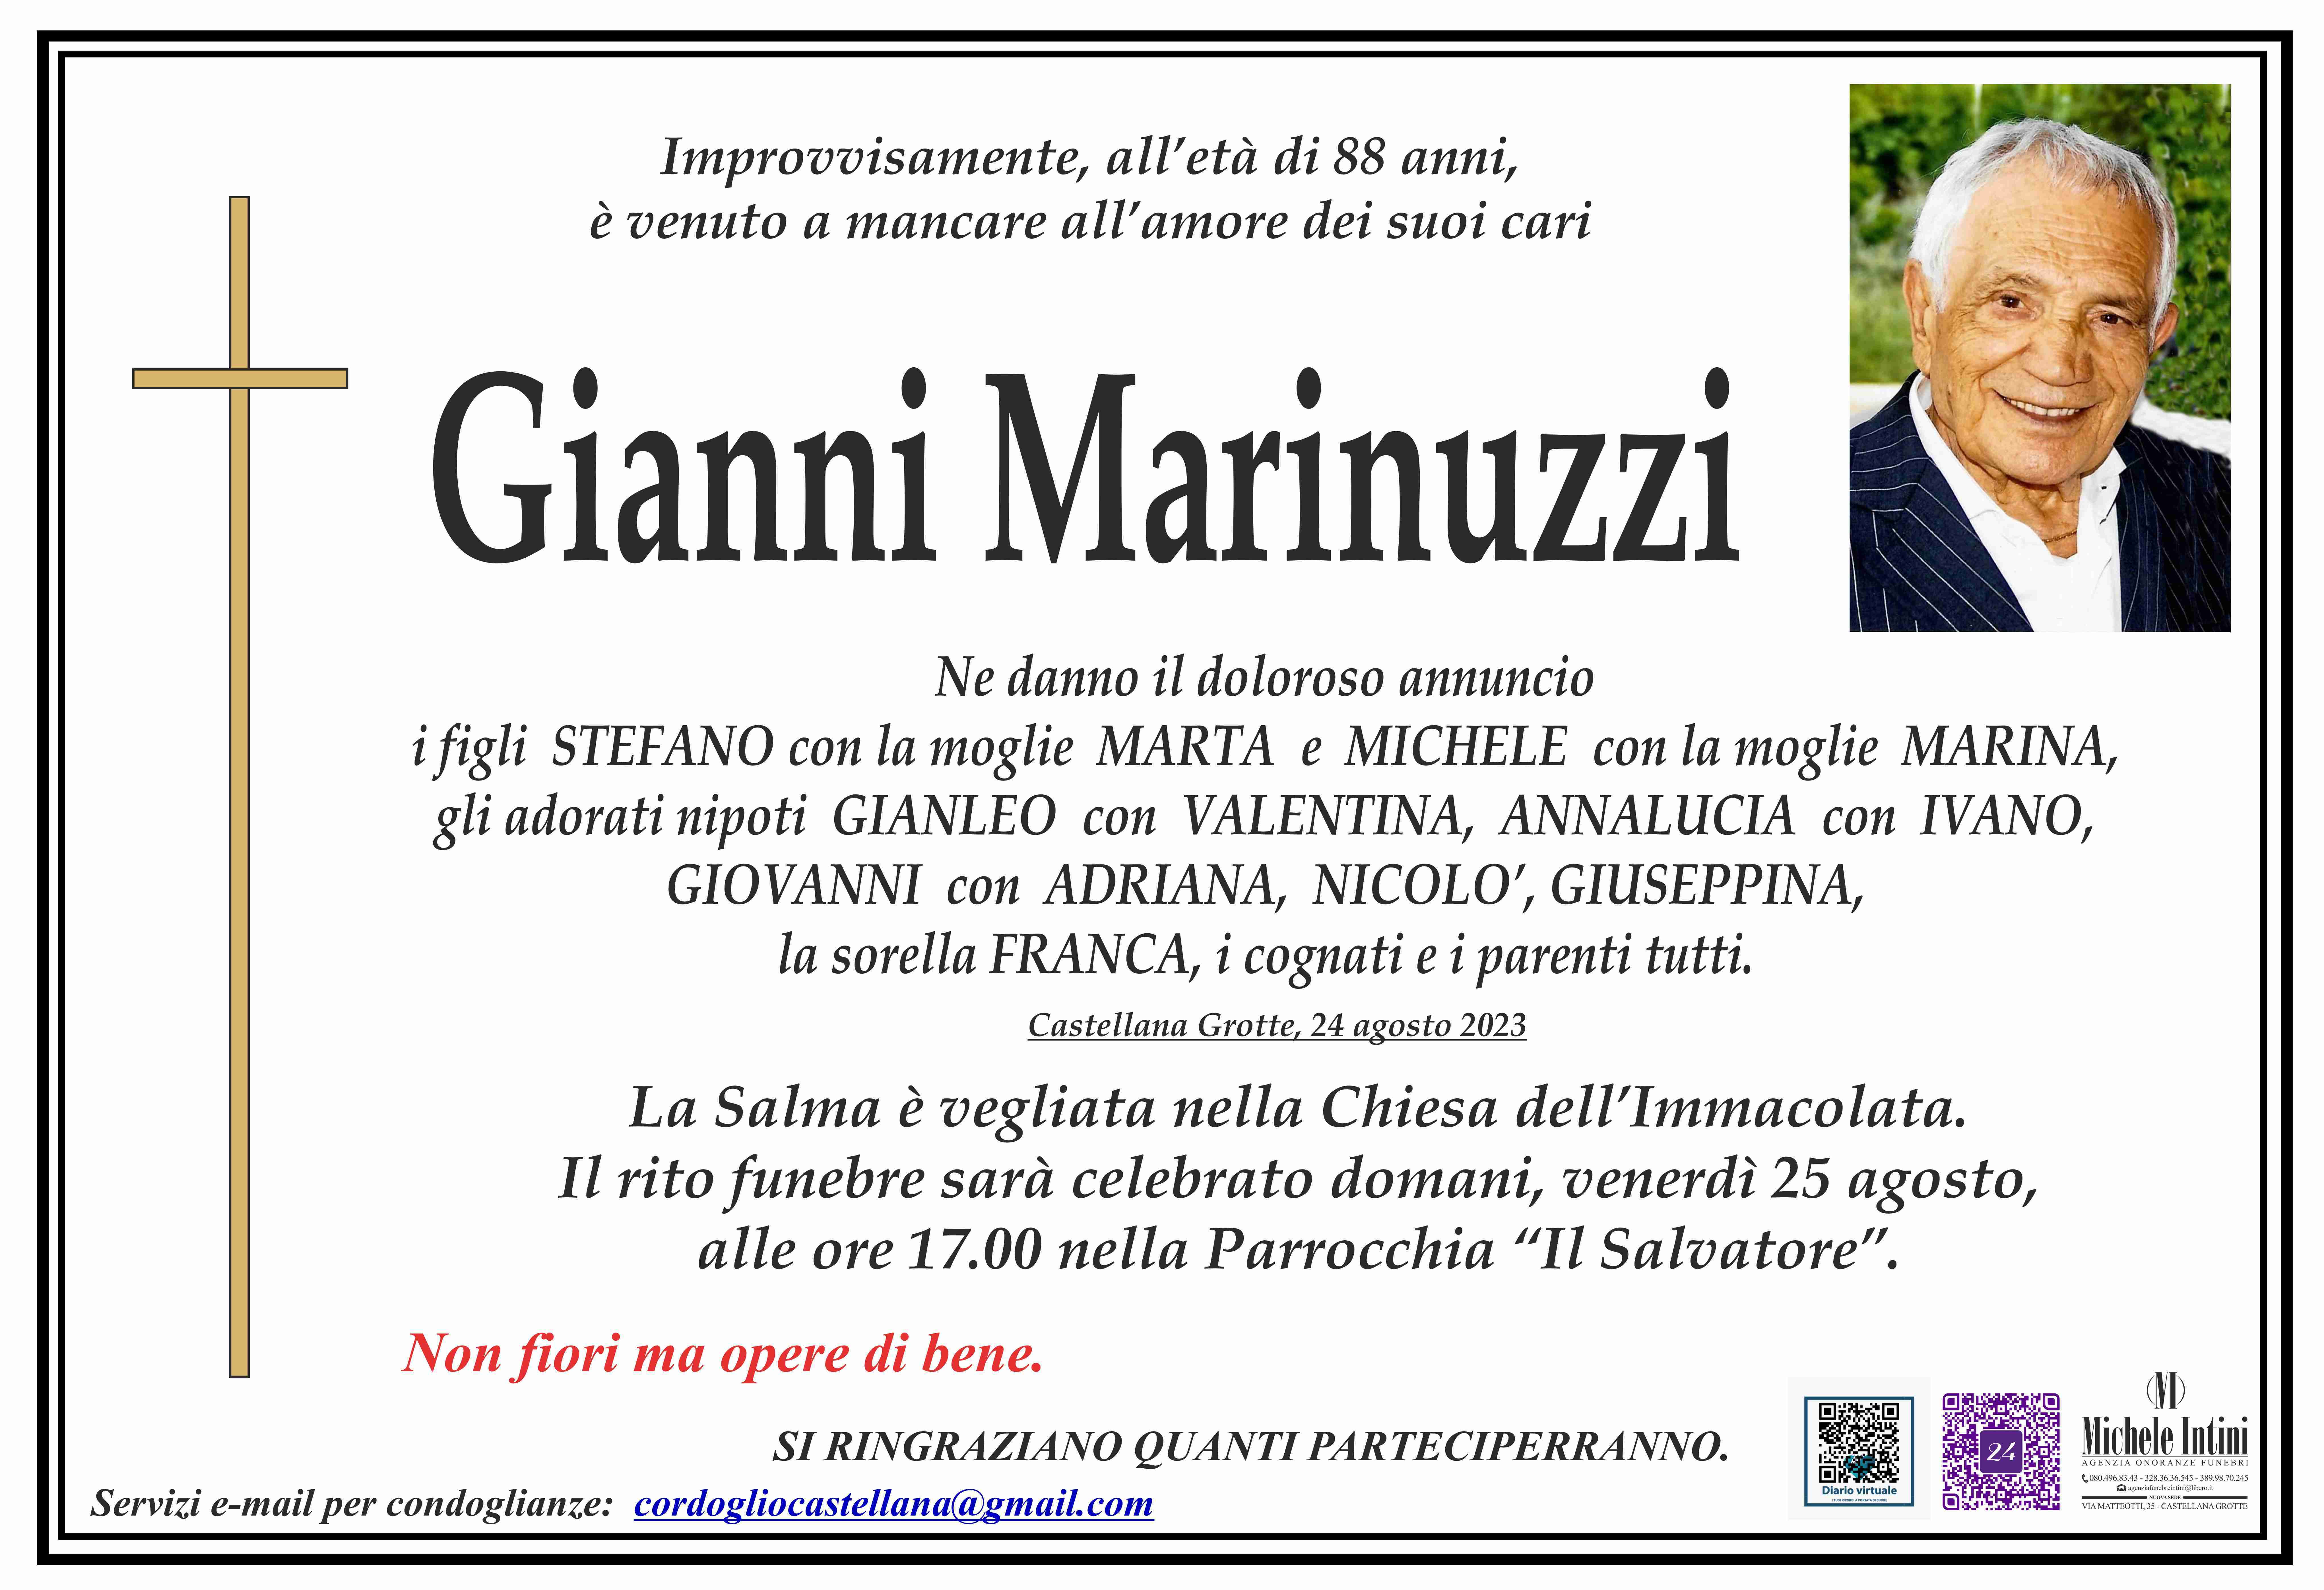 Gianni Marinuzzi